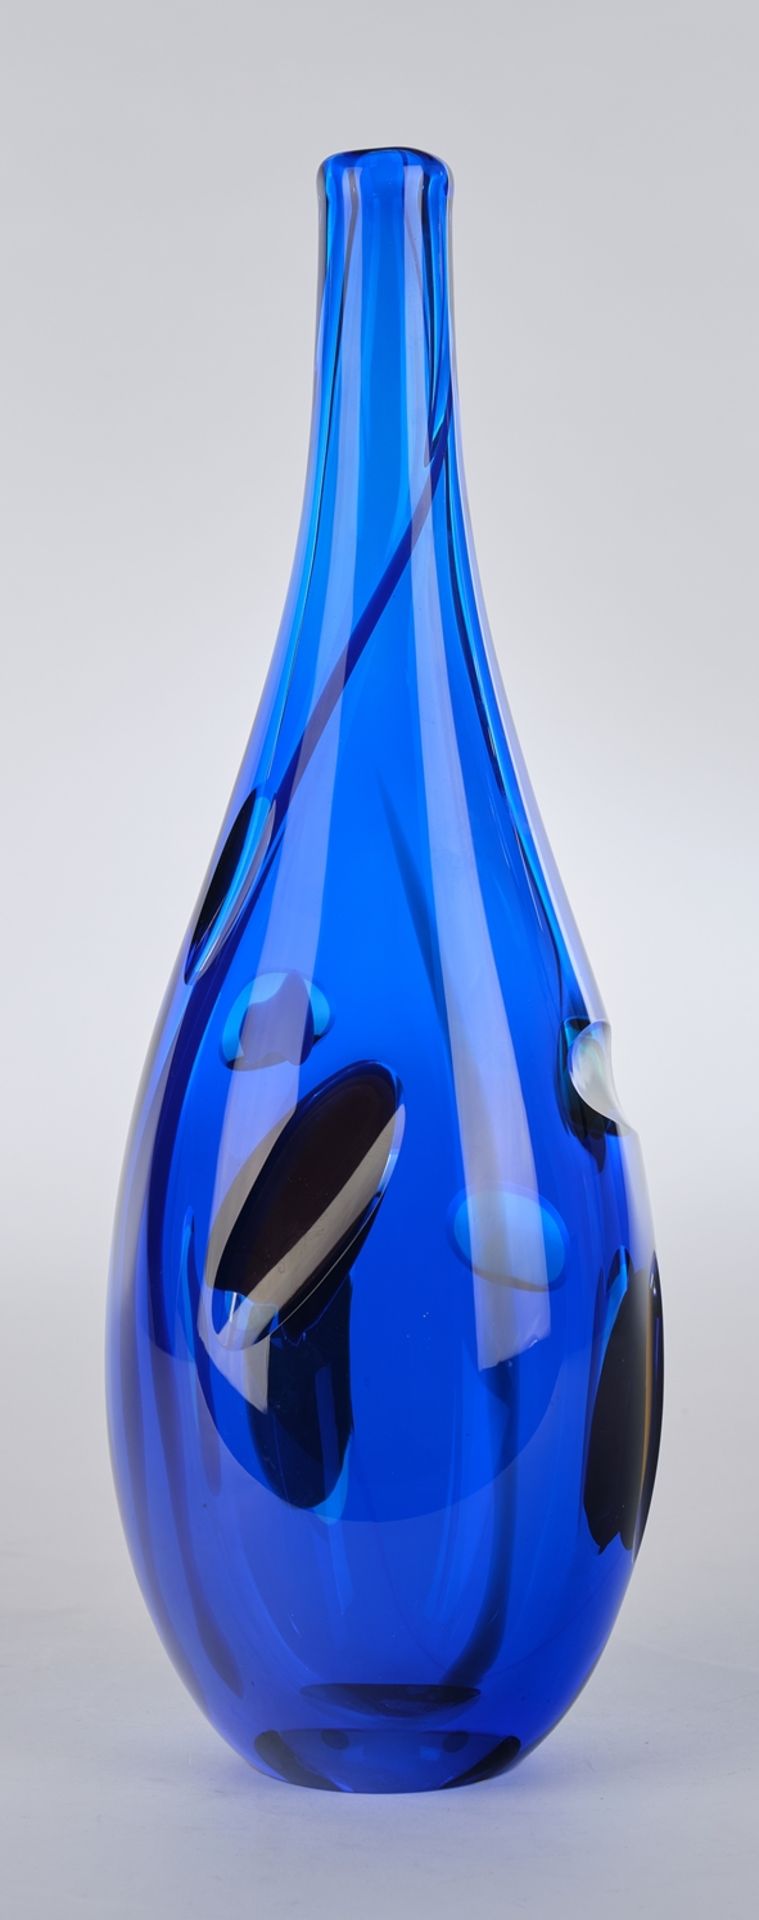 Sahlin, Gunnel, Kosta Boda, "Oriente III", Flaschenvase, Studioglas, limitierte Auflage, blau, eing - Image 2 of 3